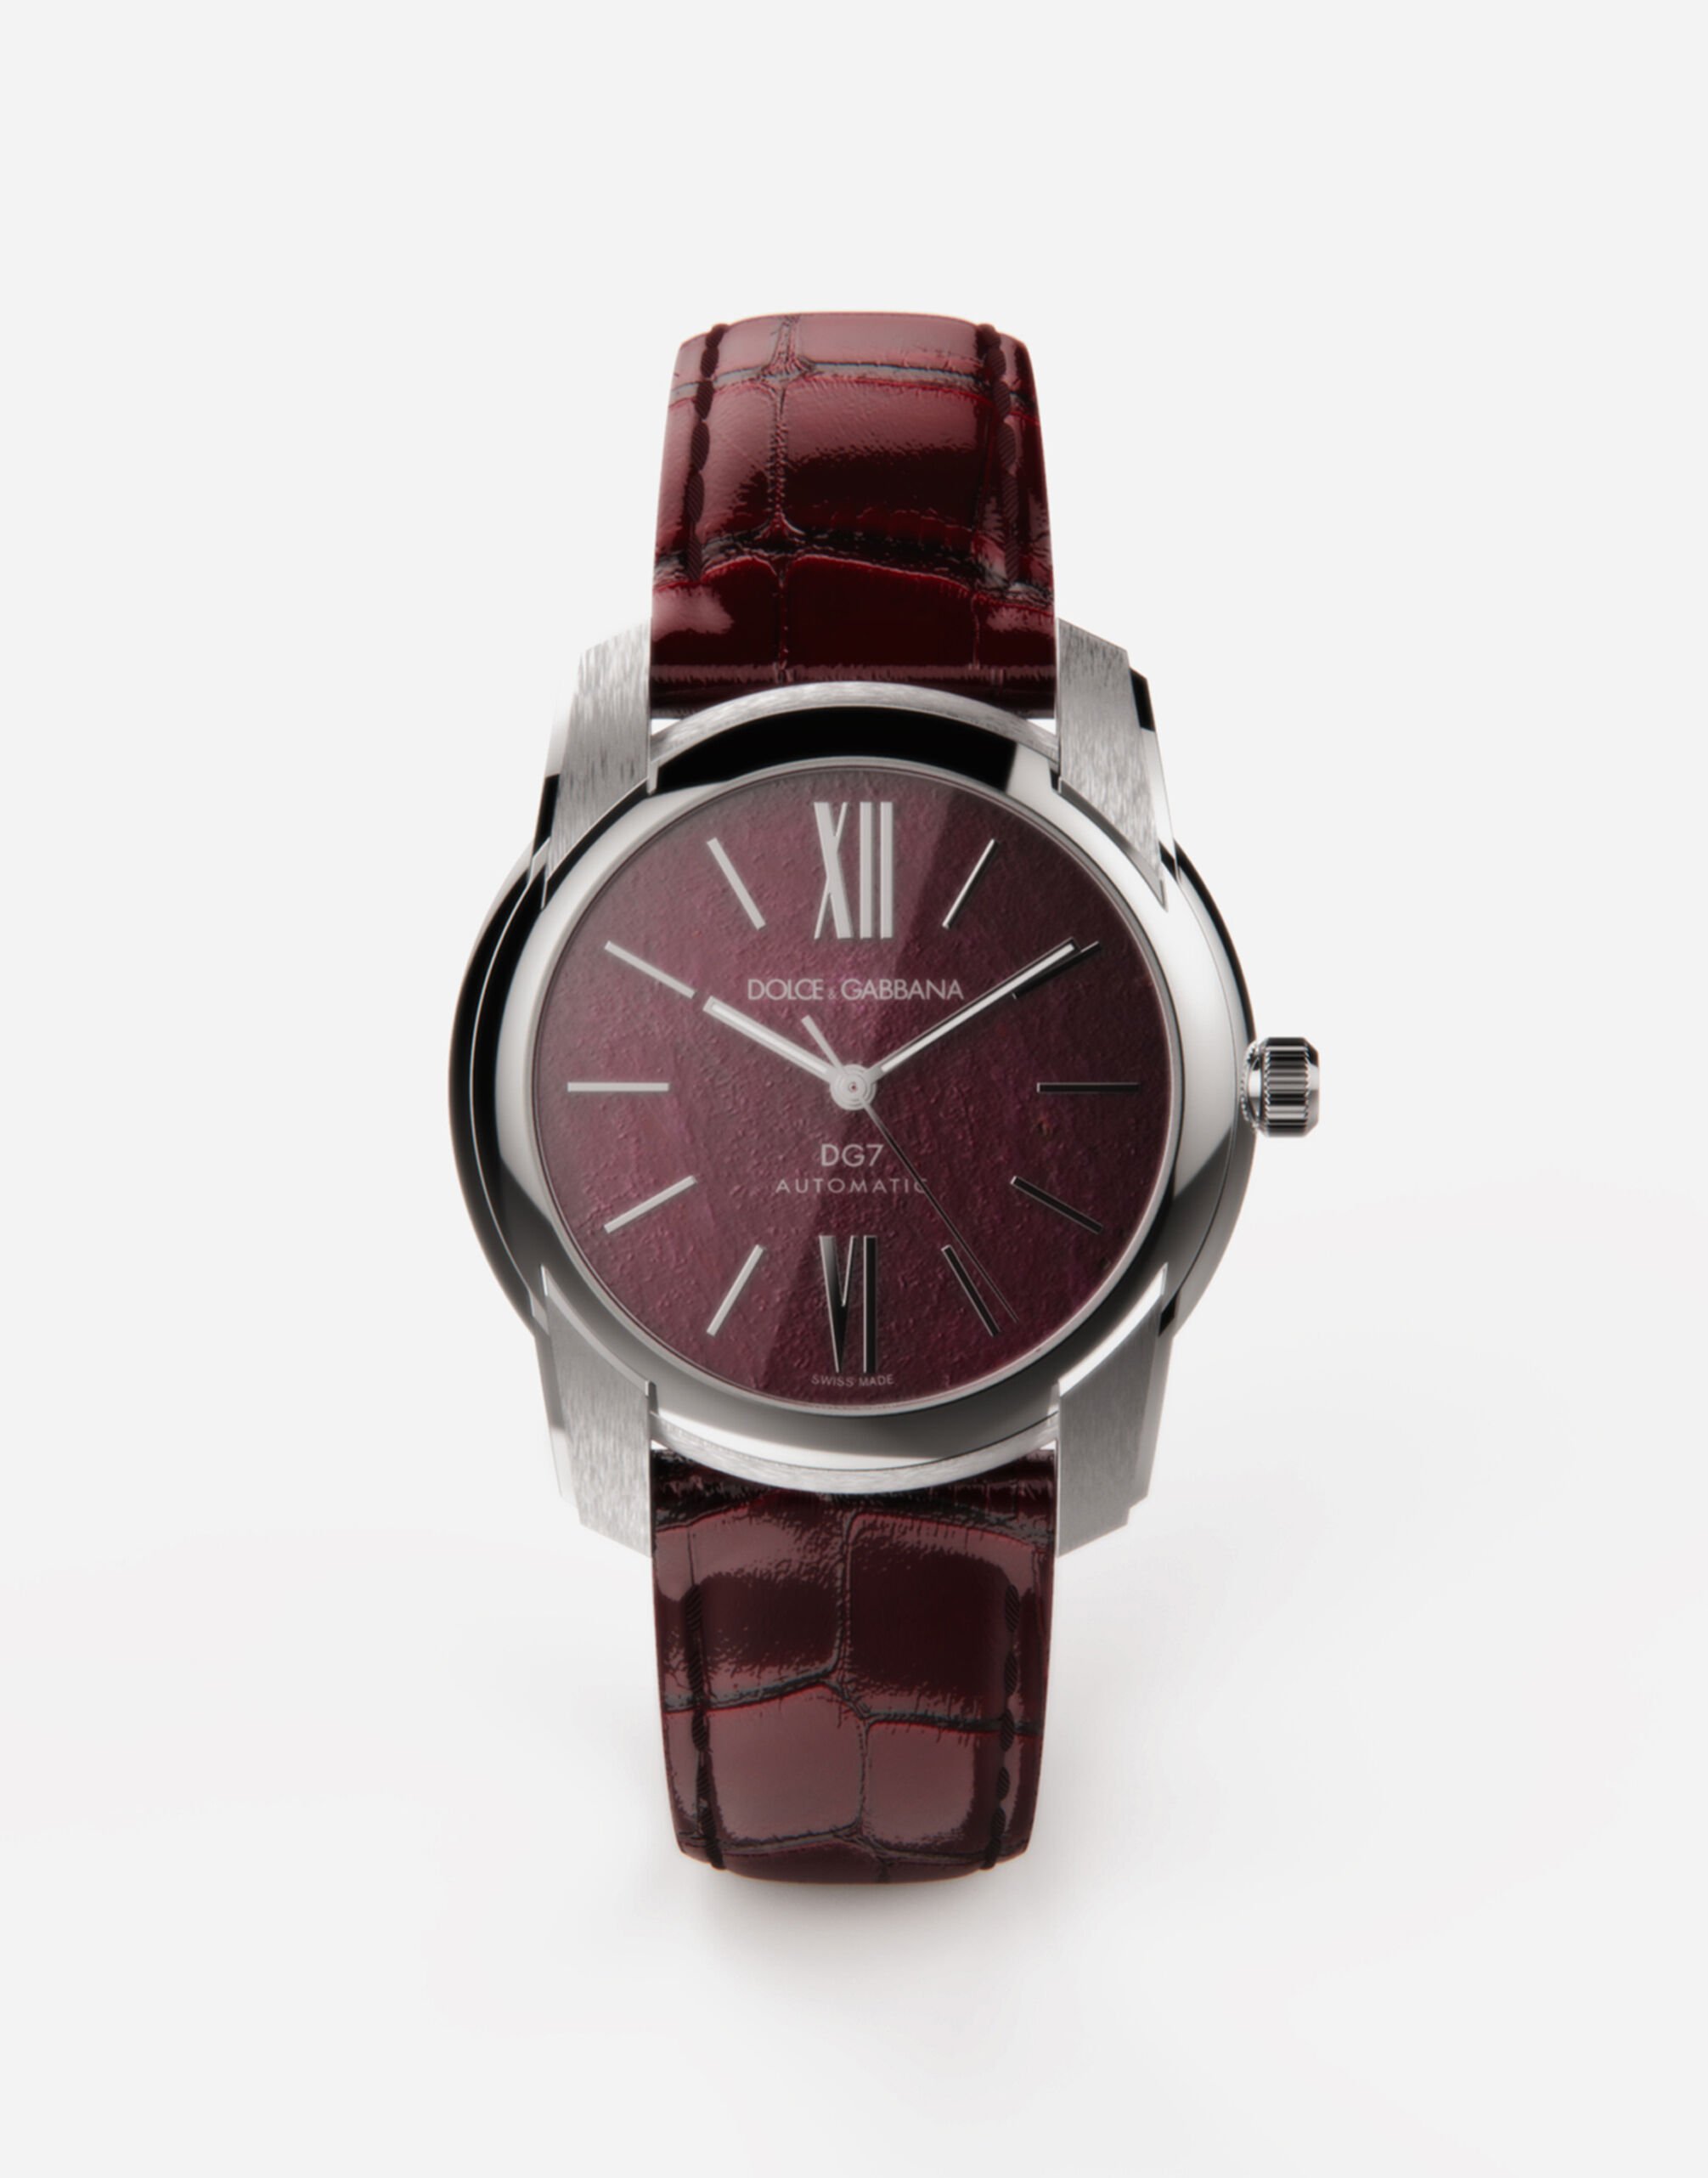 Dolce & Gabbana DG7 watch in steel with ruby Bordeaux WWEEGGWW045